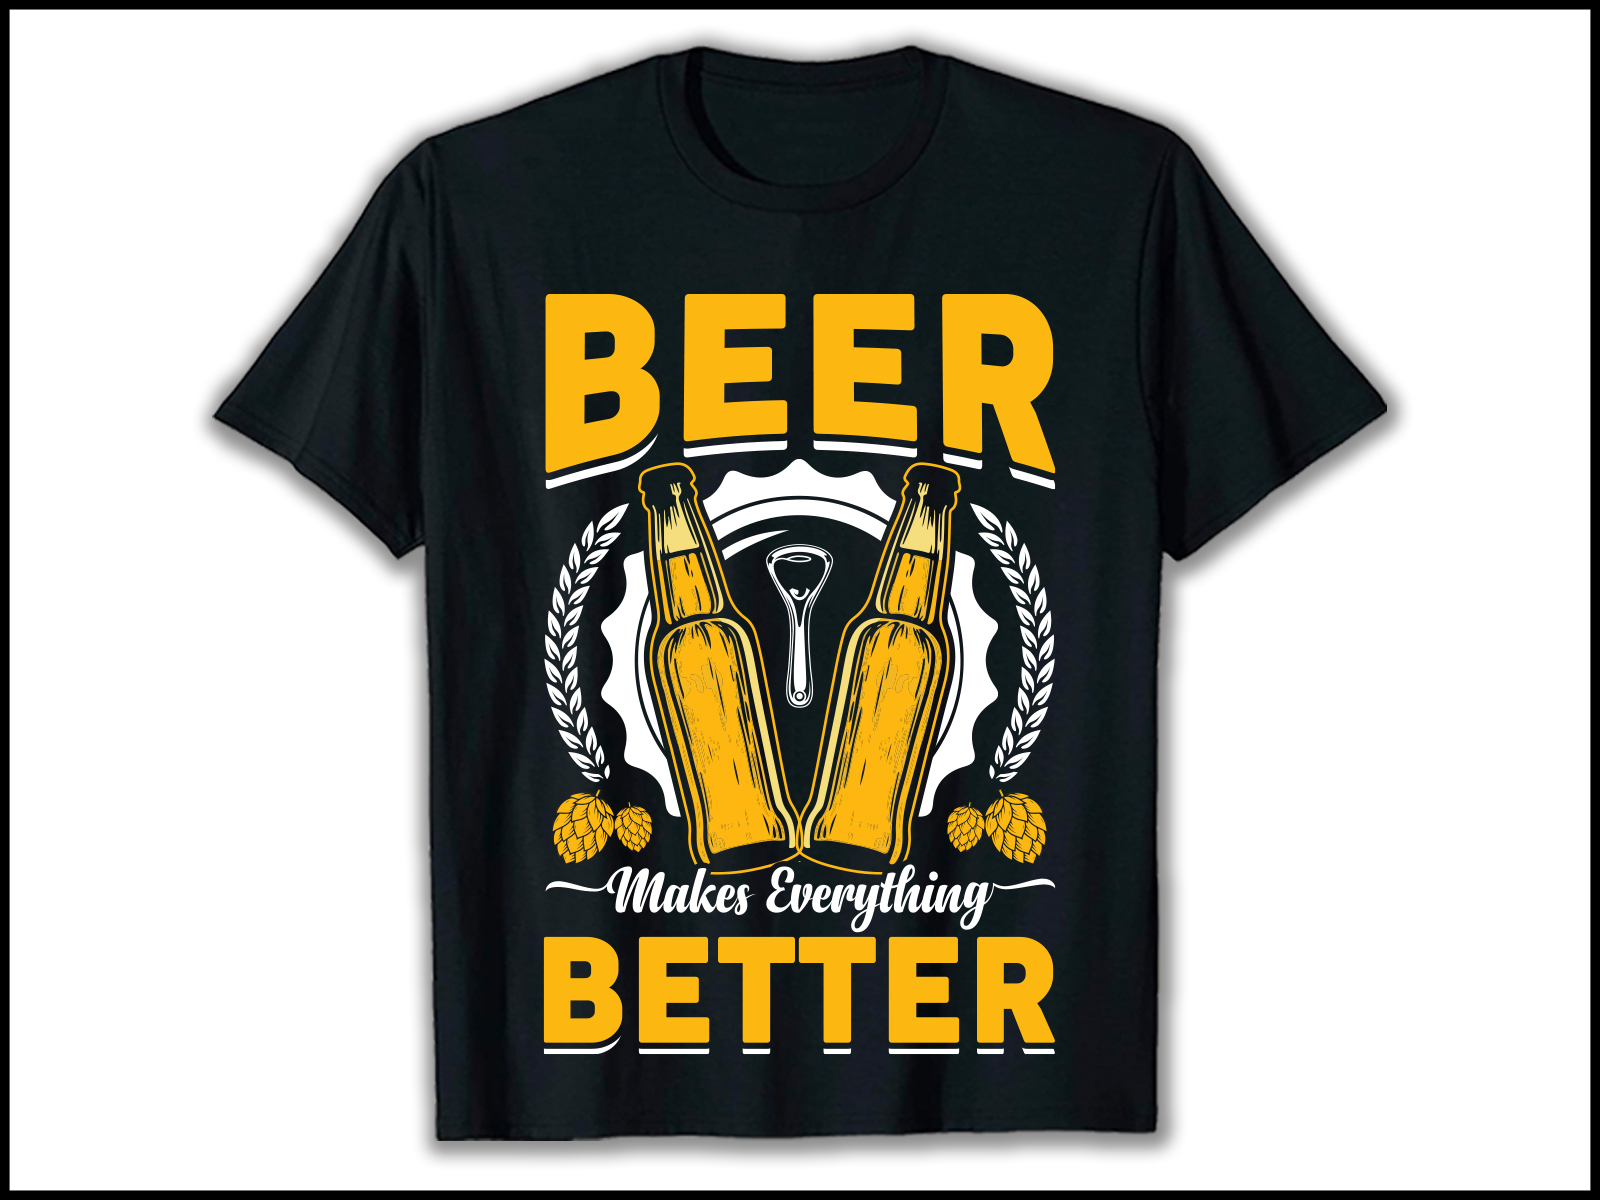 Better beer